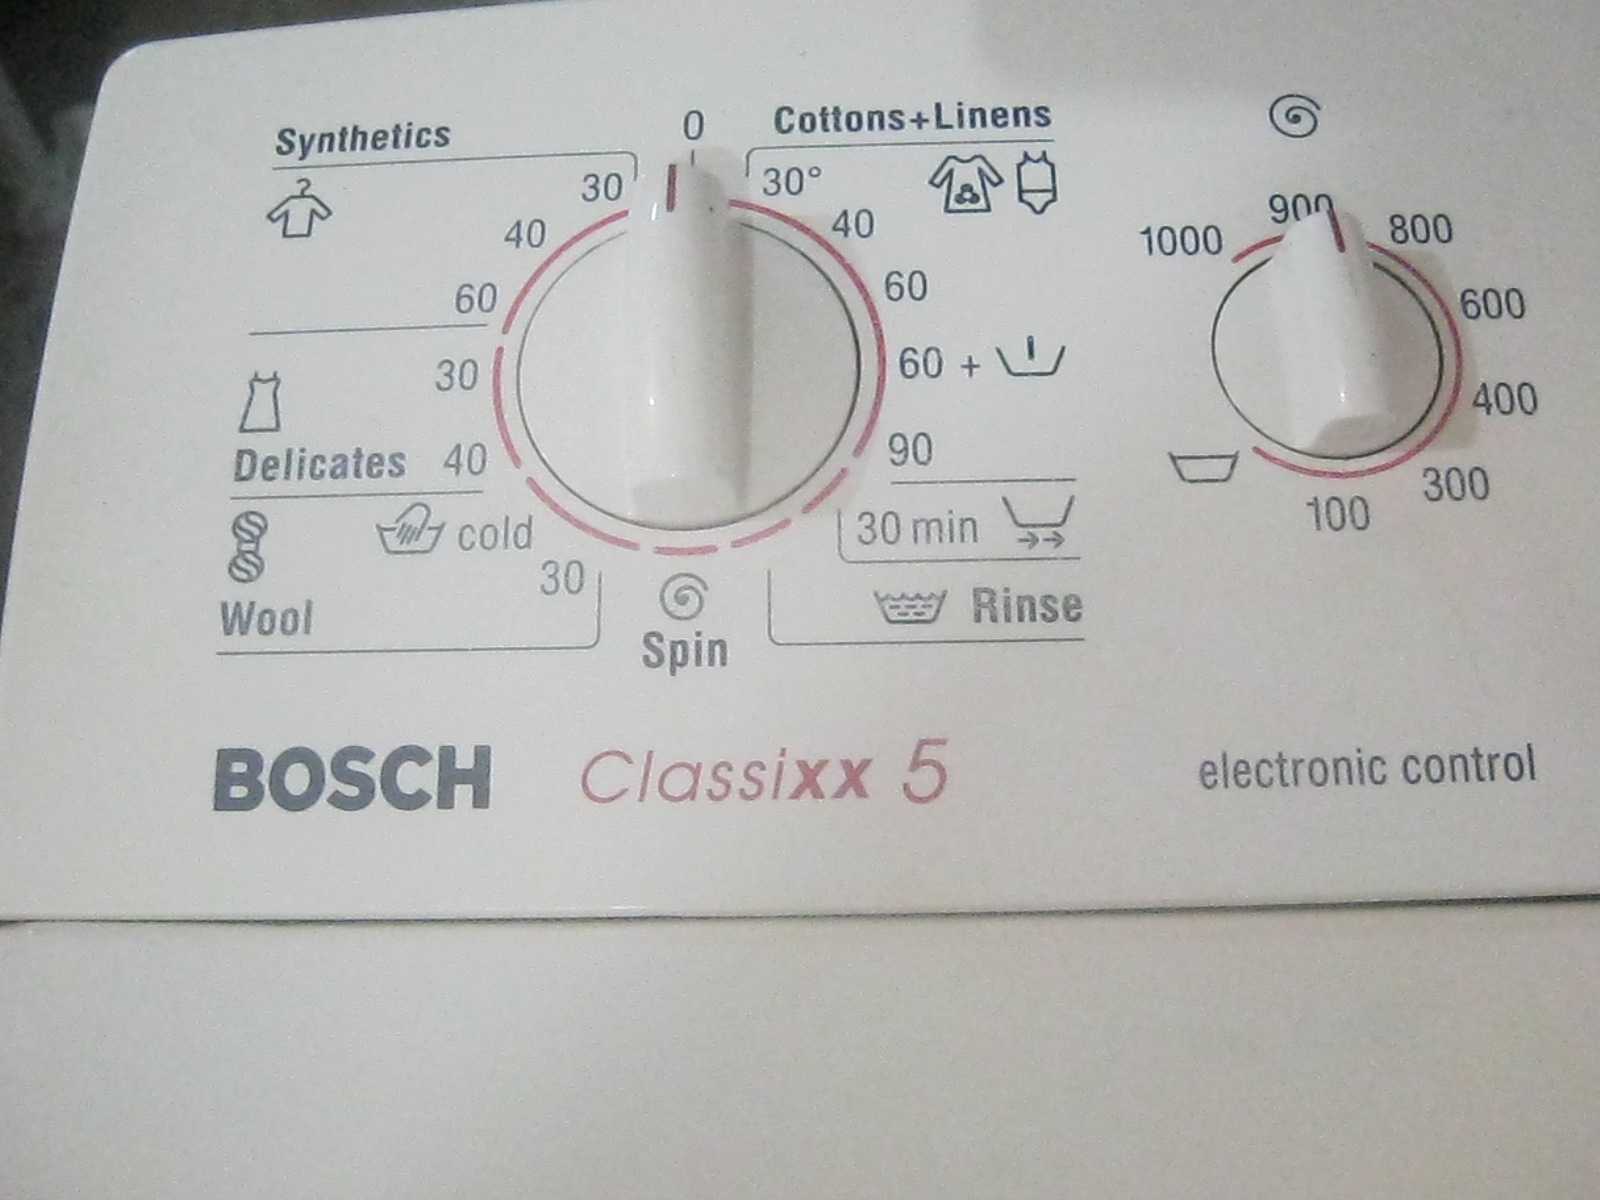 Вертикальная машинка бош. Машинка стиральная Bosch Classixx 5. Стиральная машина Bosch Classixx 5 вертикальная загрузка. Режимы стиральной машинки бош Классик 5. Стиральная машина бош Classixx 5 с вертикальной загрузкой.